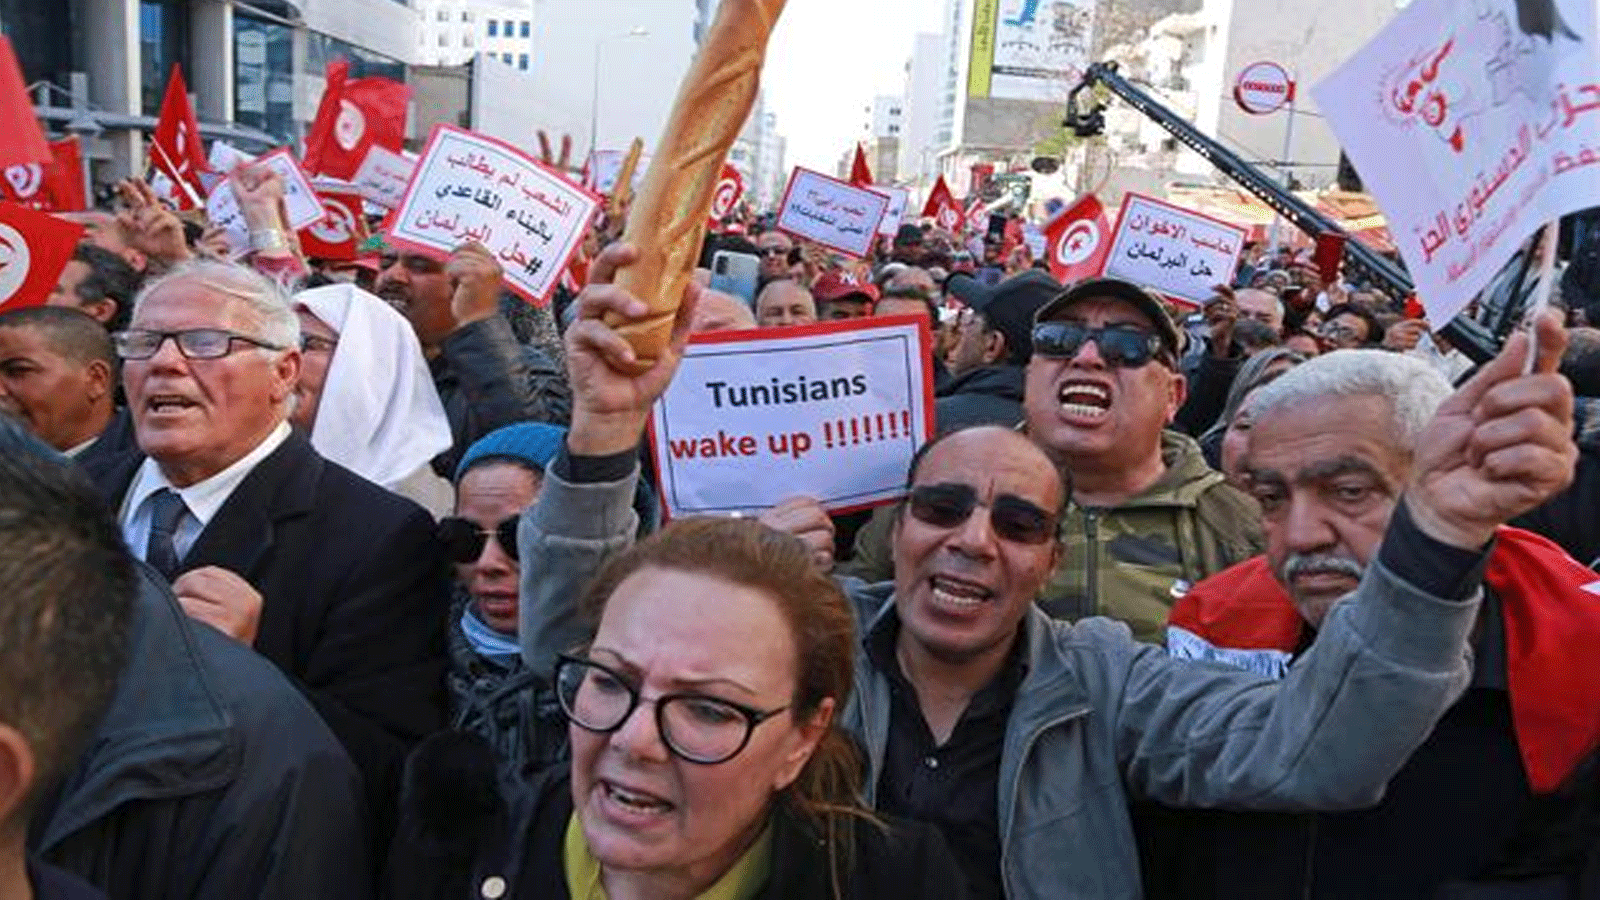  أنصار المعارضة التونسية يشاركون في مسيرة يوم الأحد ضد استيلاء الرئيس قيس سعيد على السلطة والأزمة الاقتصادية في تونس العاصمة